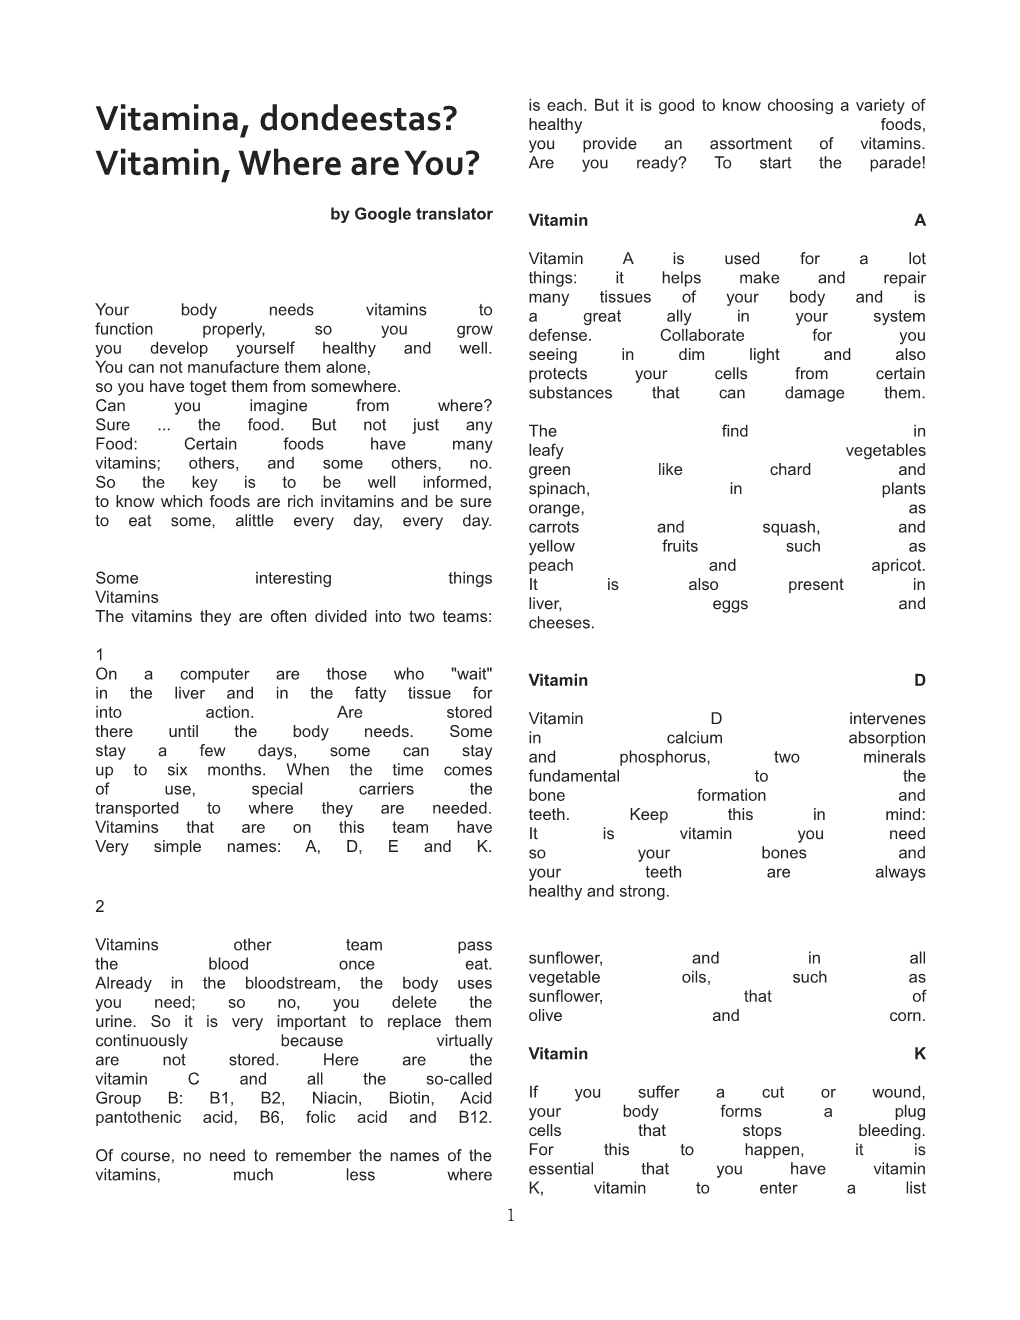 Vitamin, Where Are You?